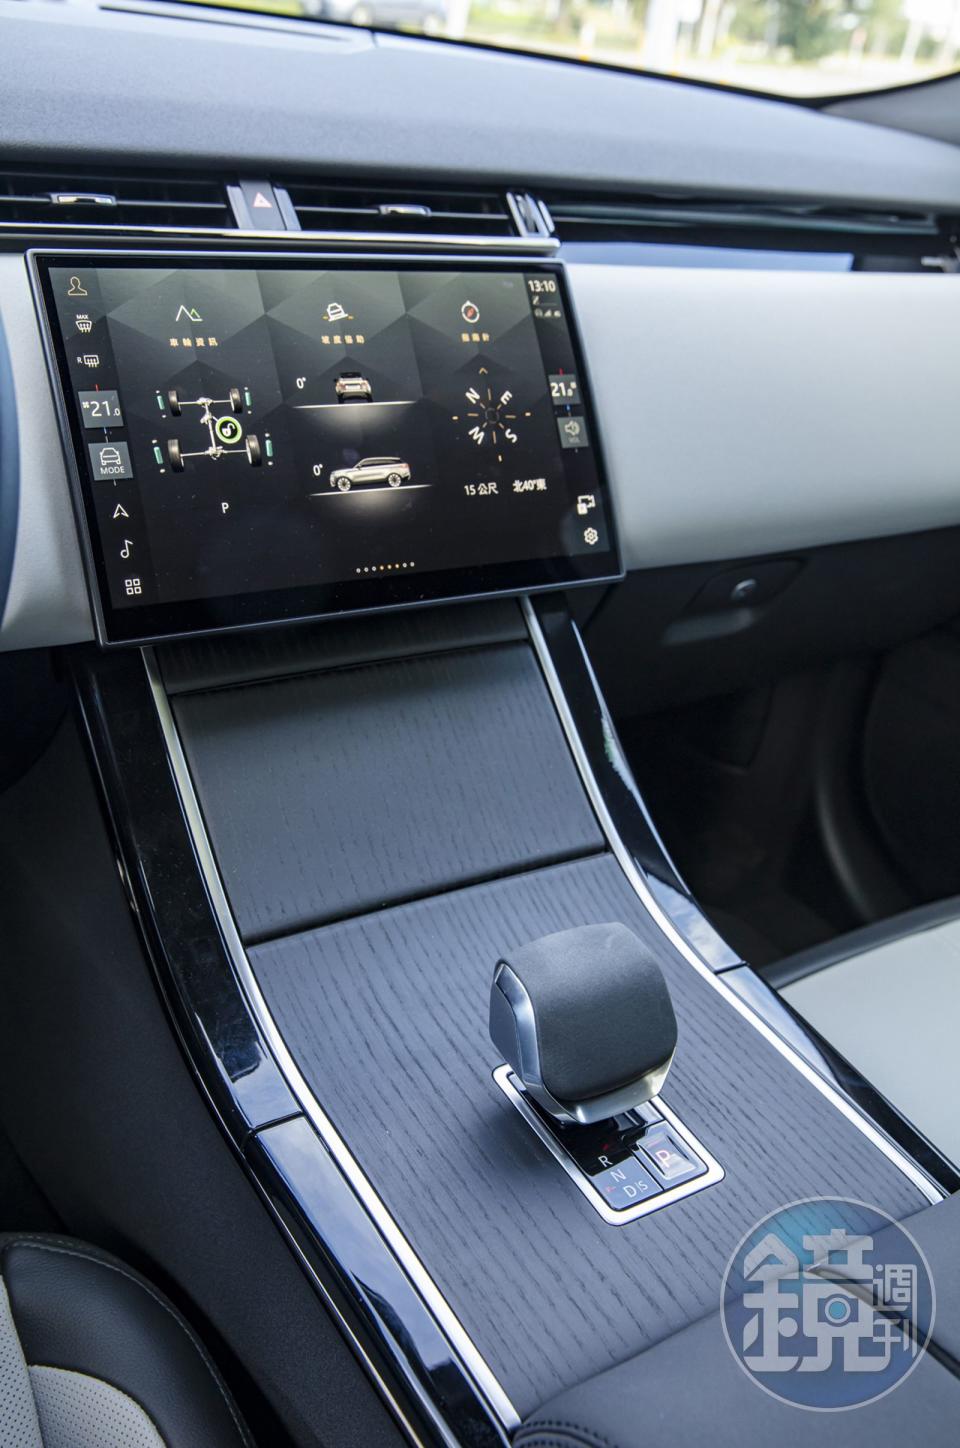 有別於以往的上下雙層螢幕設計，新介面整合所有主要車輛功能的控制於新的11.4吋曲面玻璃觸控螢幕，連排檔座上的按鍵也全部併入了該系統內。